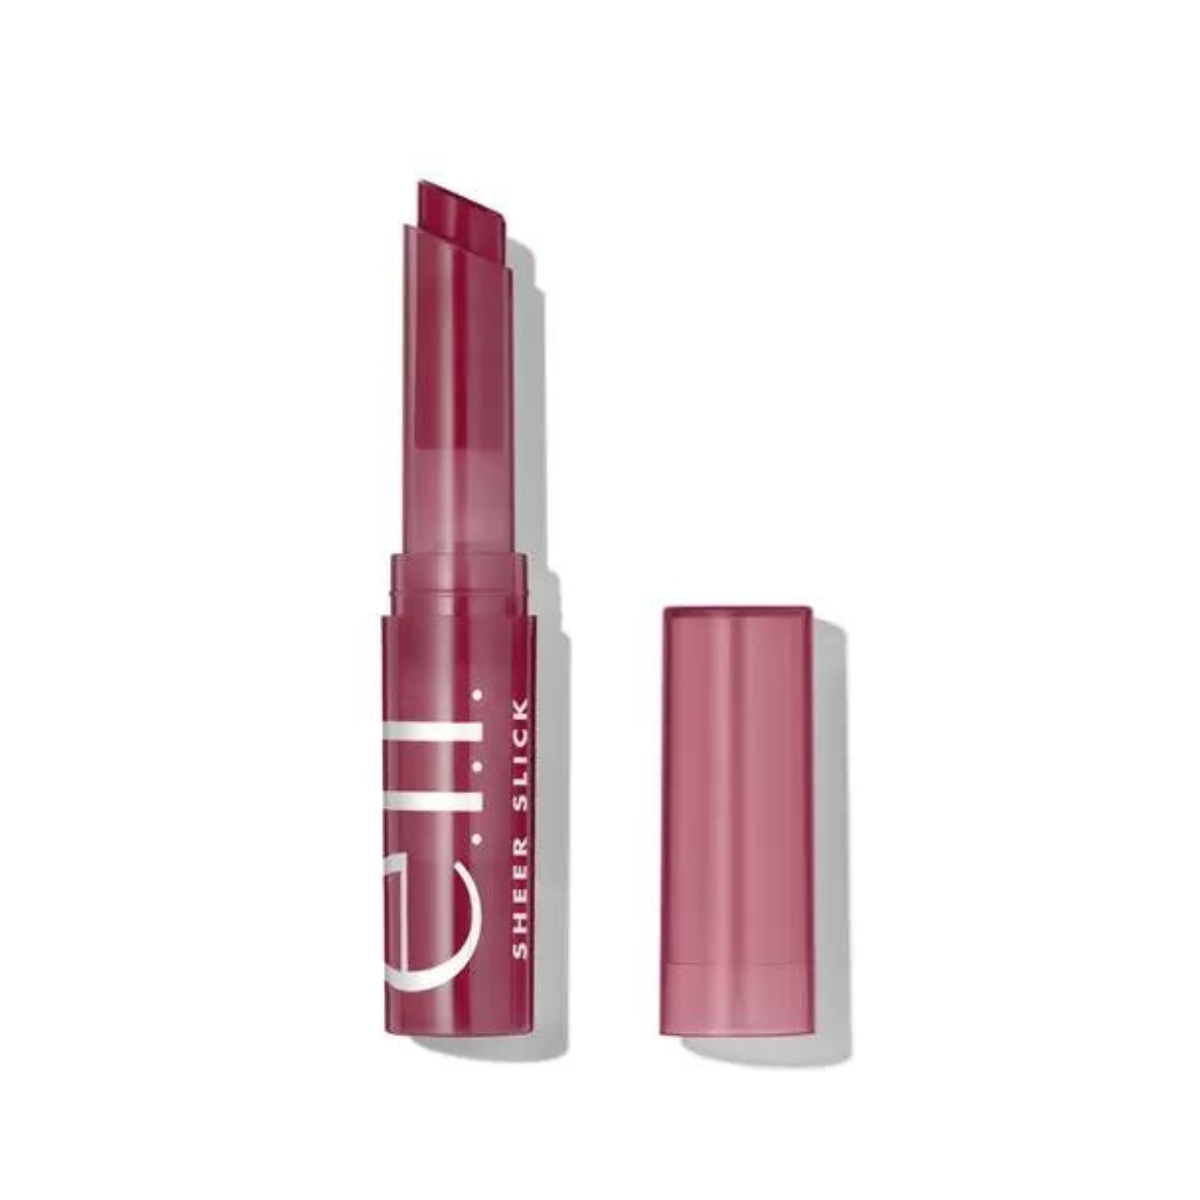 e.l.f. Cosmetics Sheer Slick Lipstick in Black Cherry